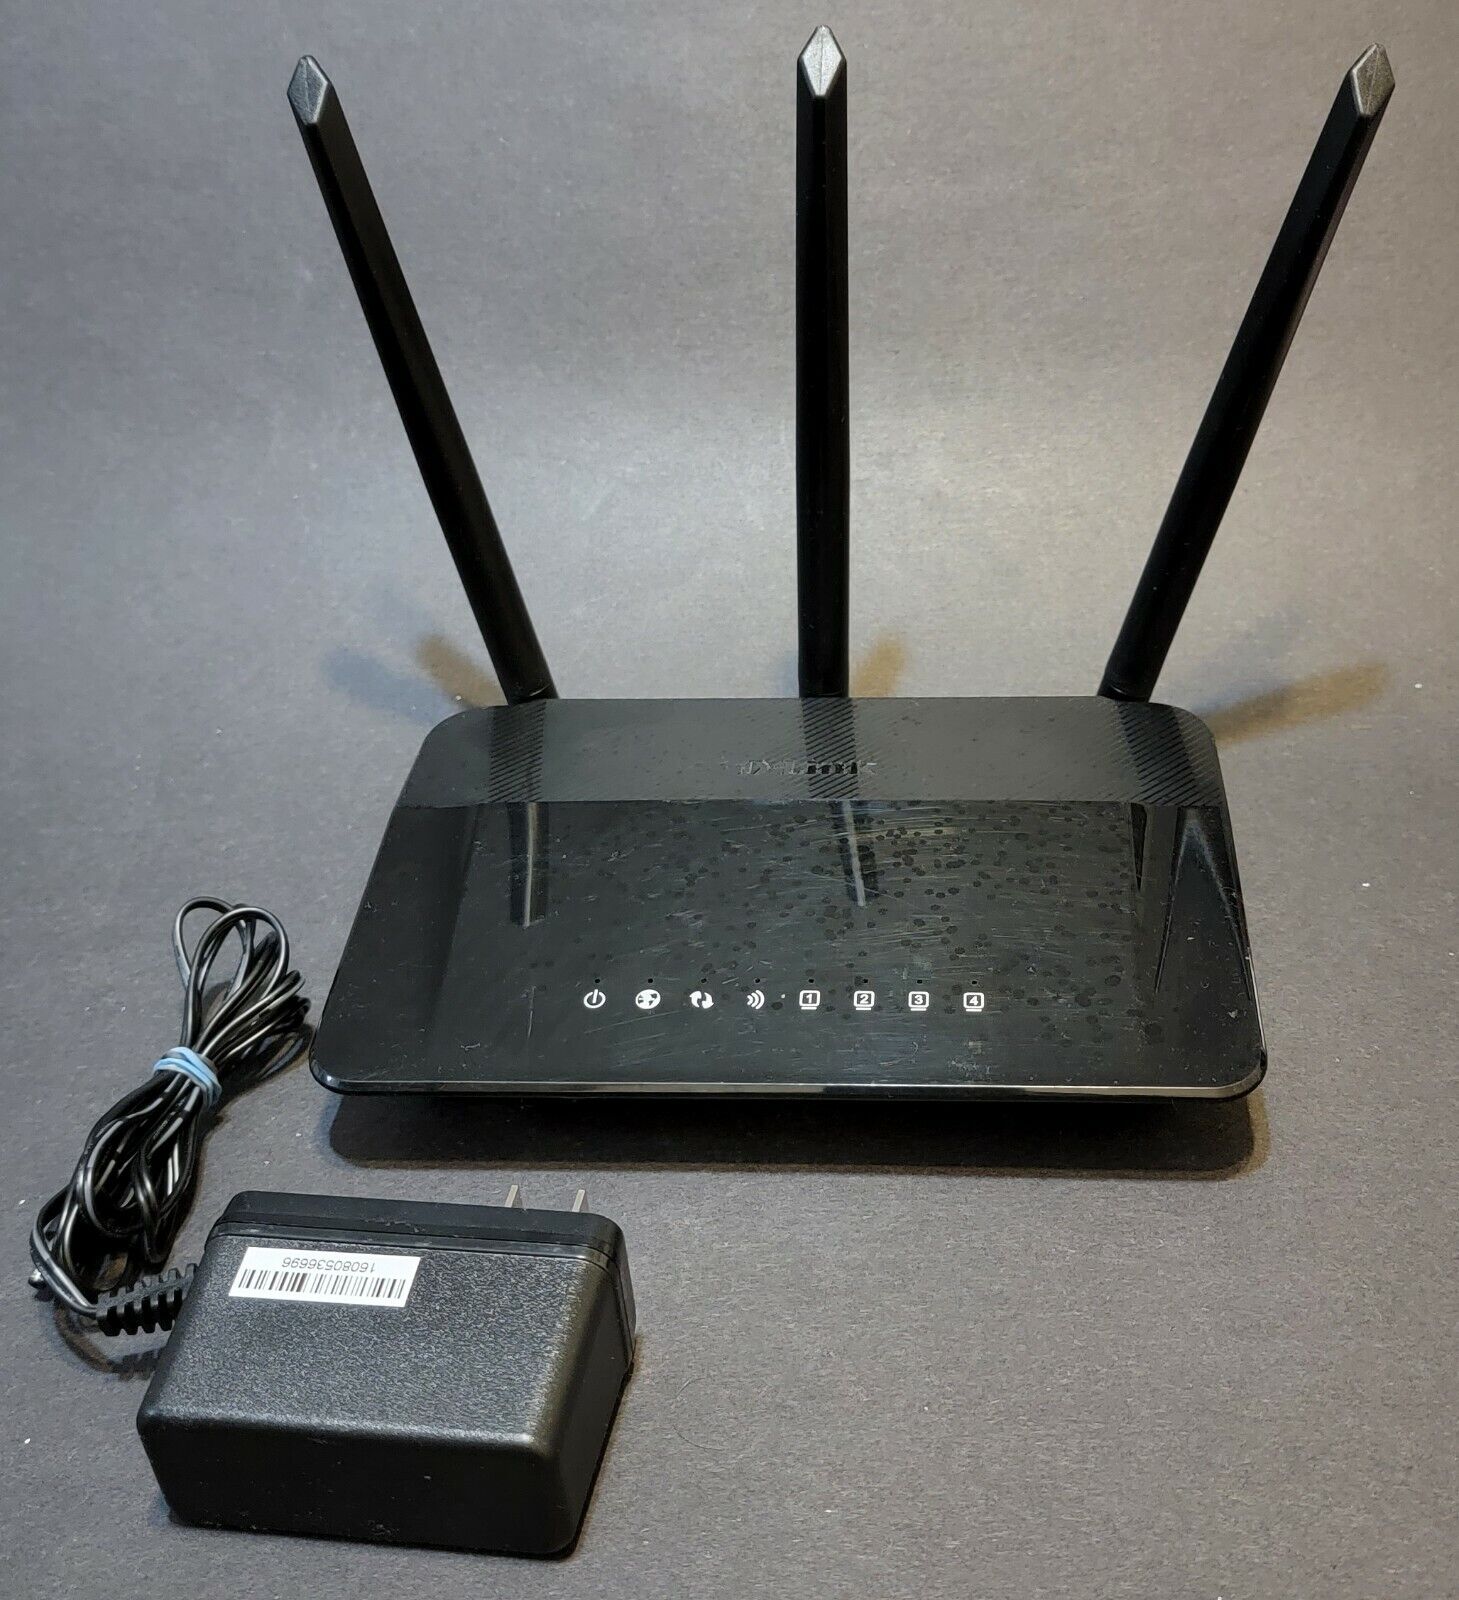 D-LINK DIR-859 AC1750 High Power Dual-Band Gigabit Ethernet Wireless Router